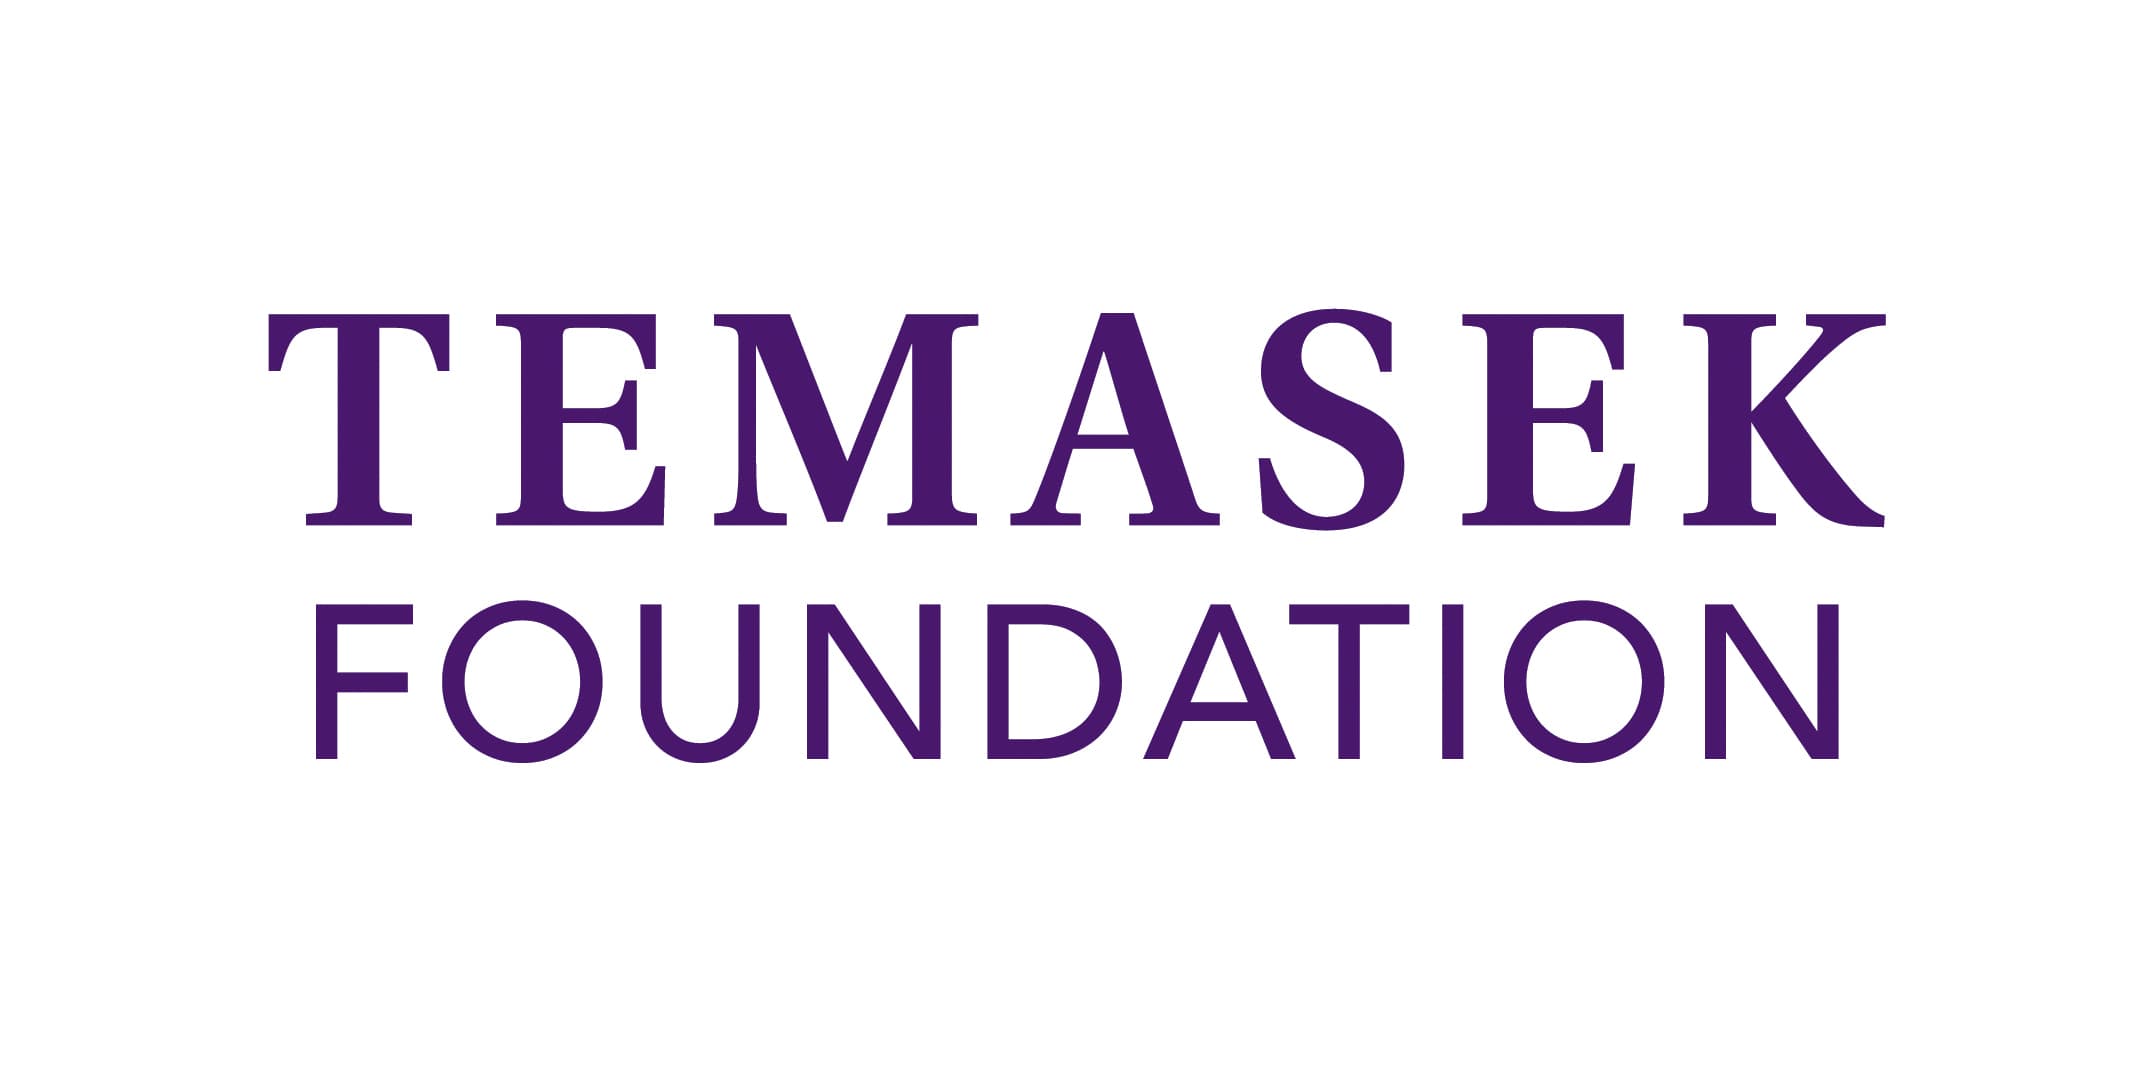 Temasek Foundation